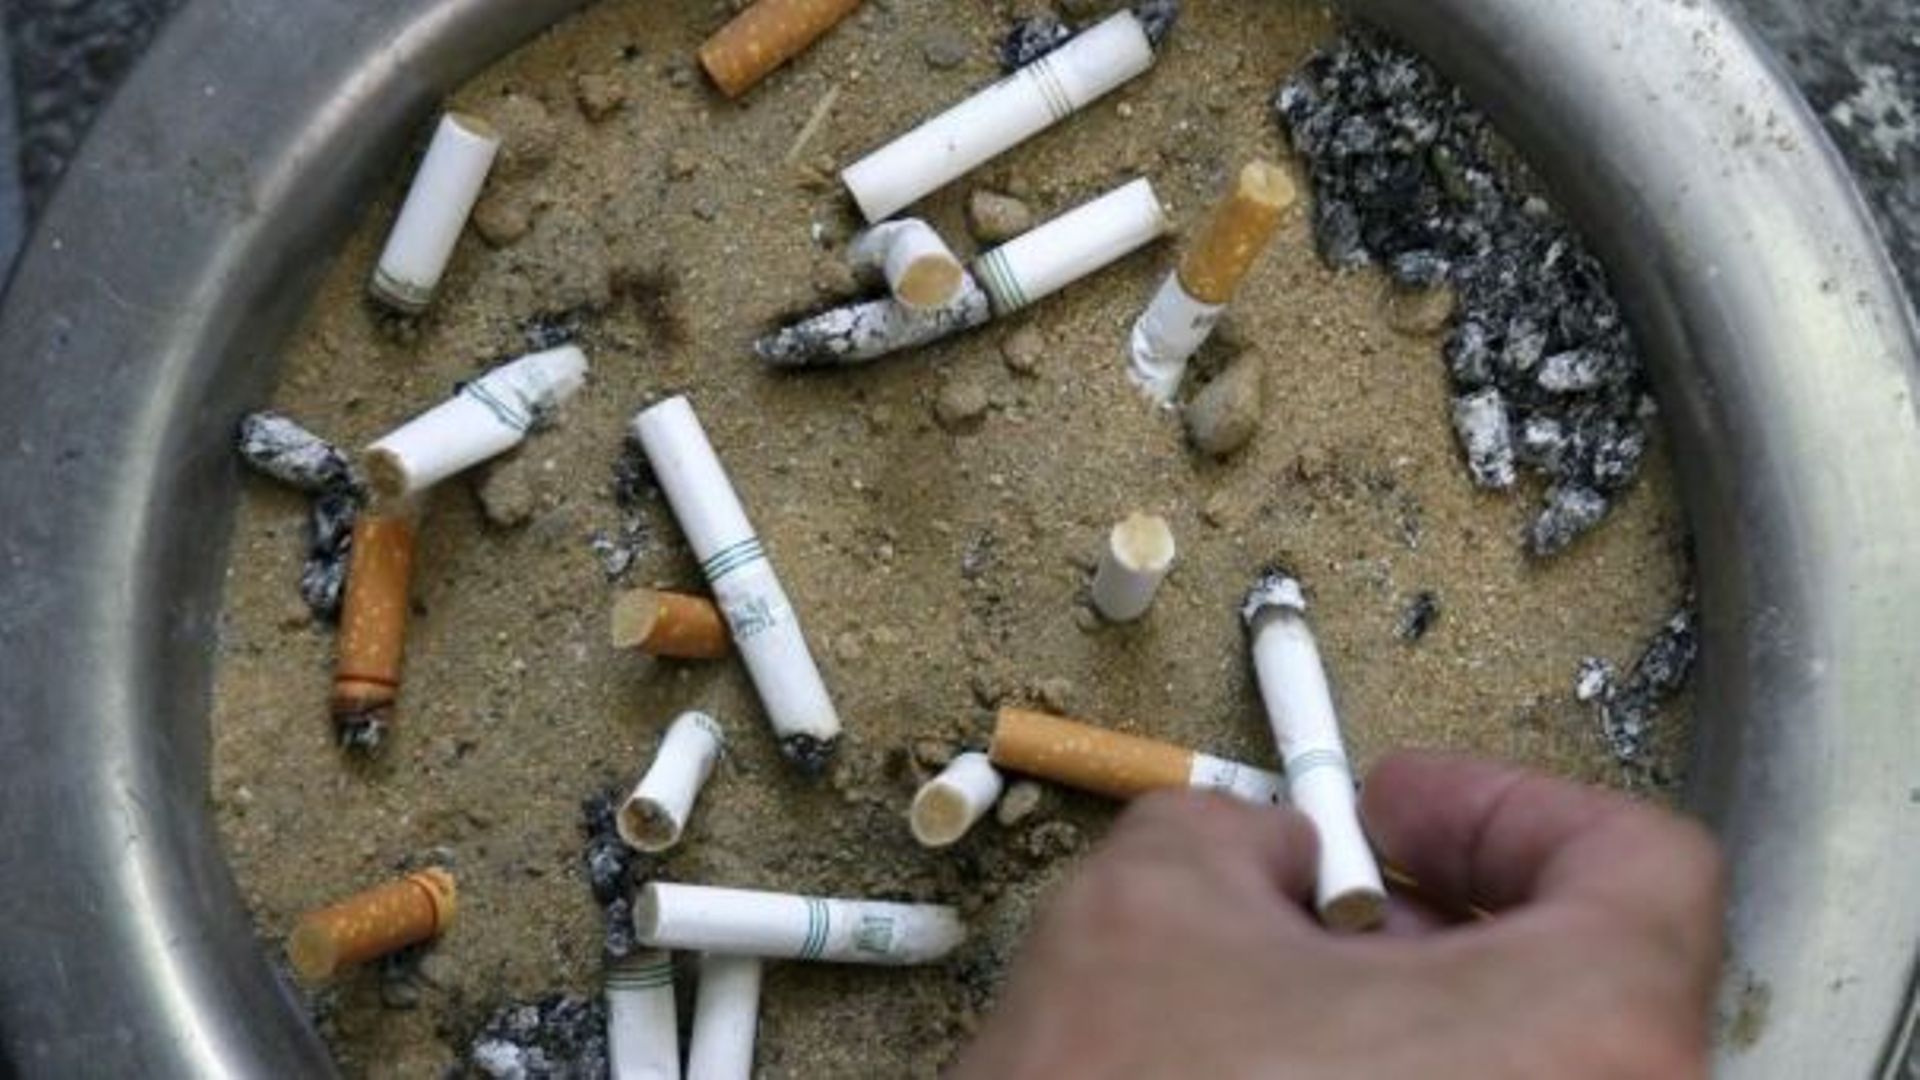 Odeur de cigarette : Que faire contre la fumée des voisins ?